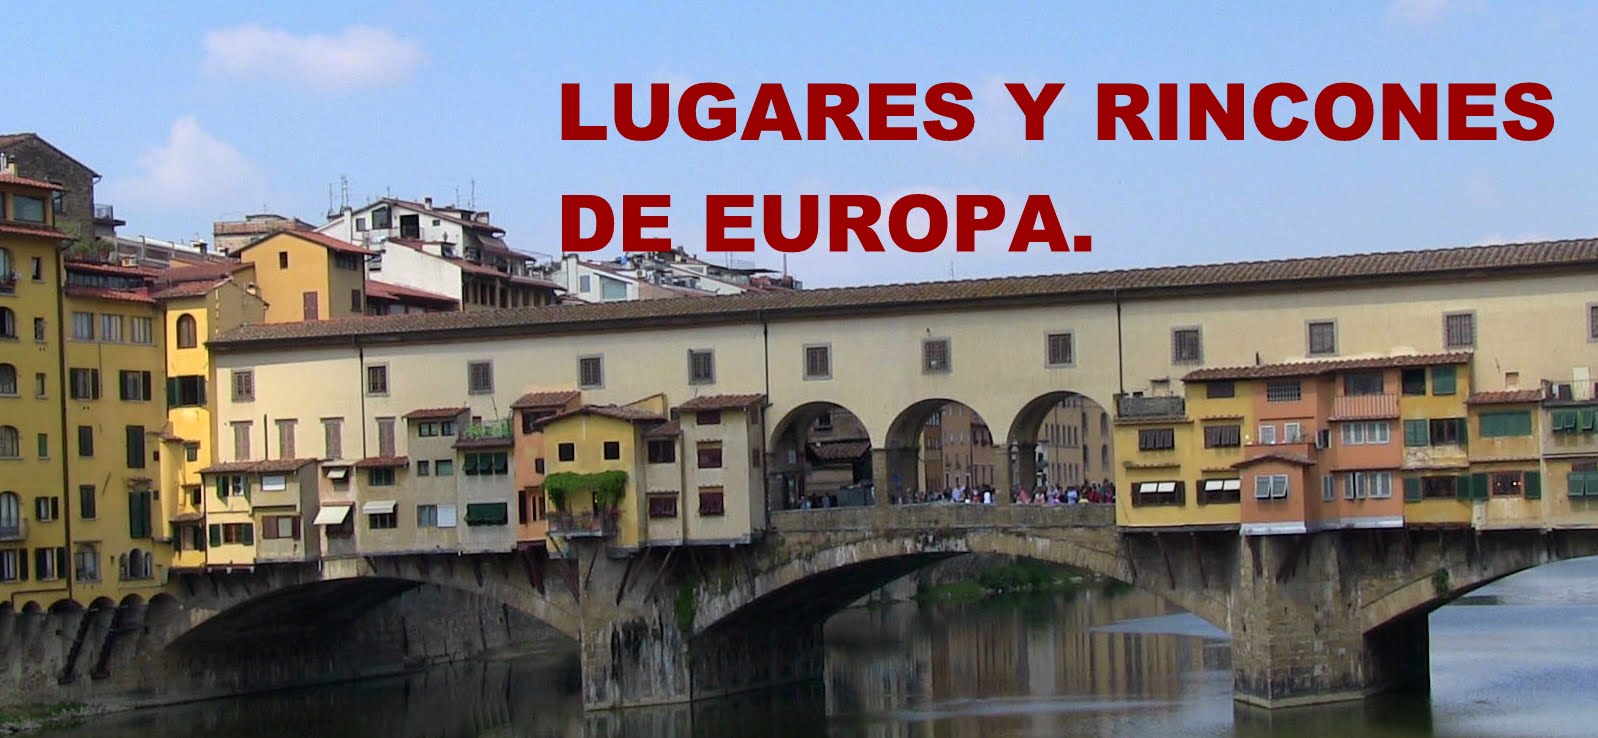 LUGARES Y RINCONES DE EUROPA.